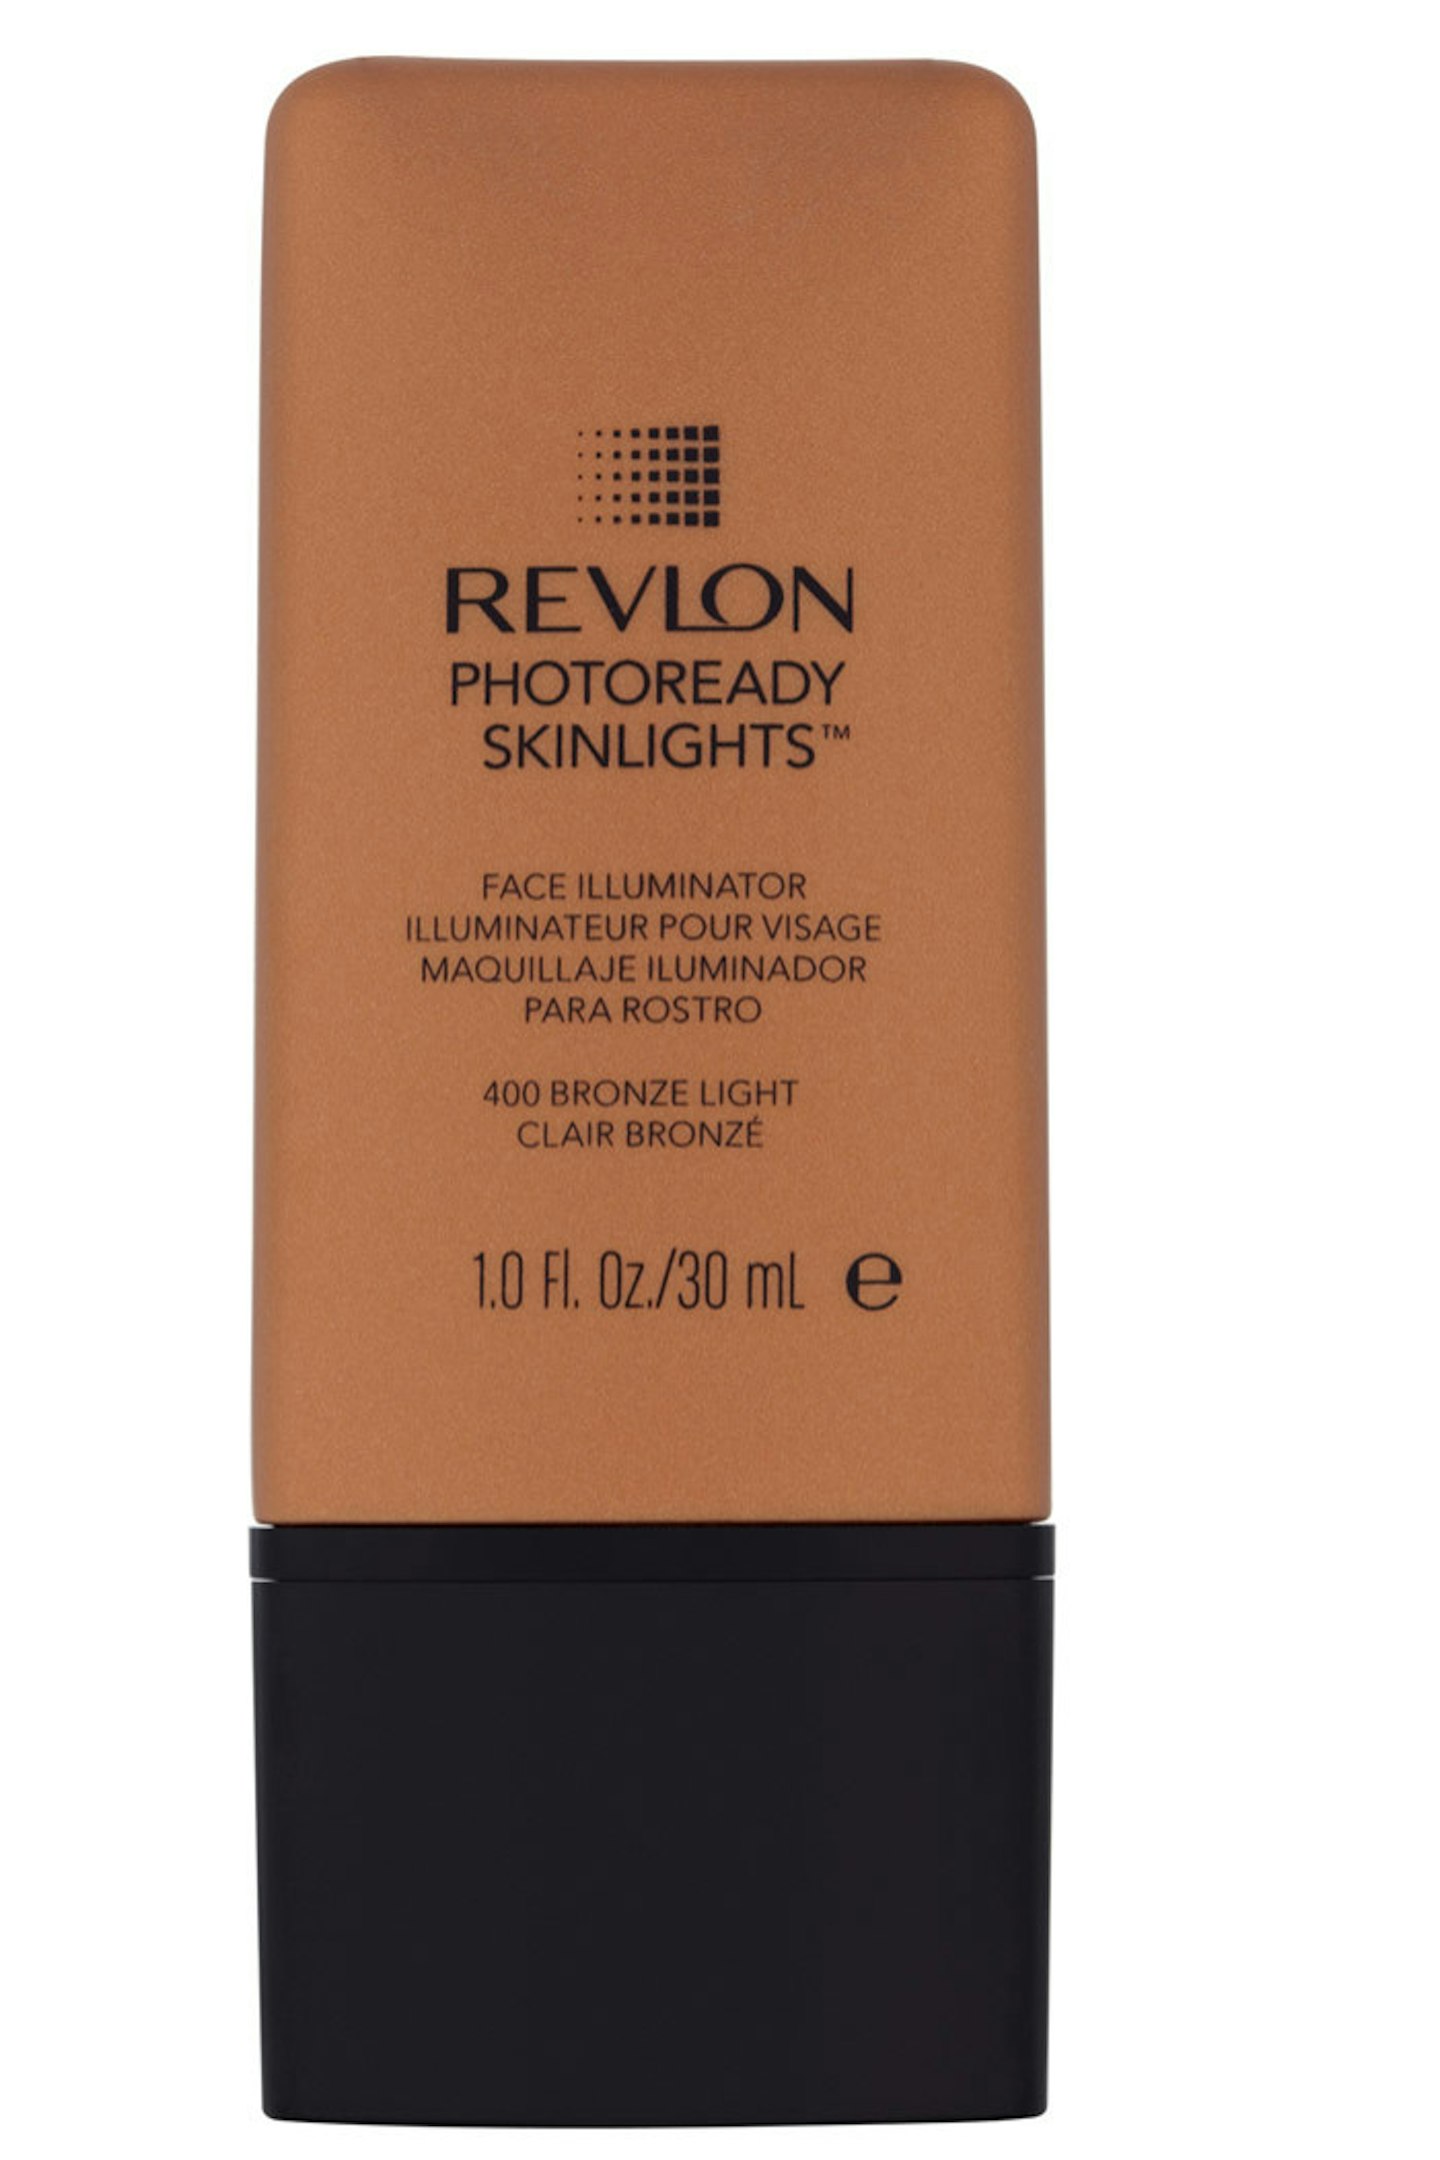 Revlon Photoready Skinlights Face Illuminator in Bronze Light 400, £11.99